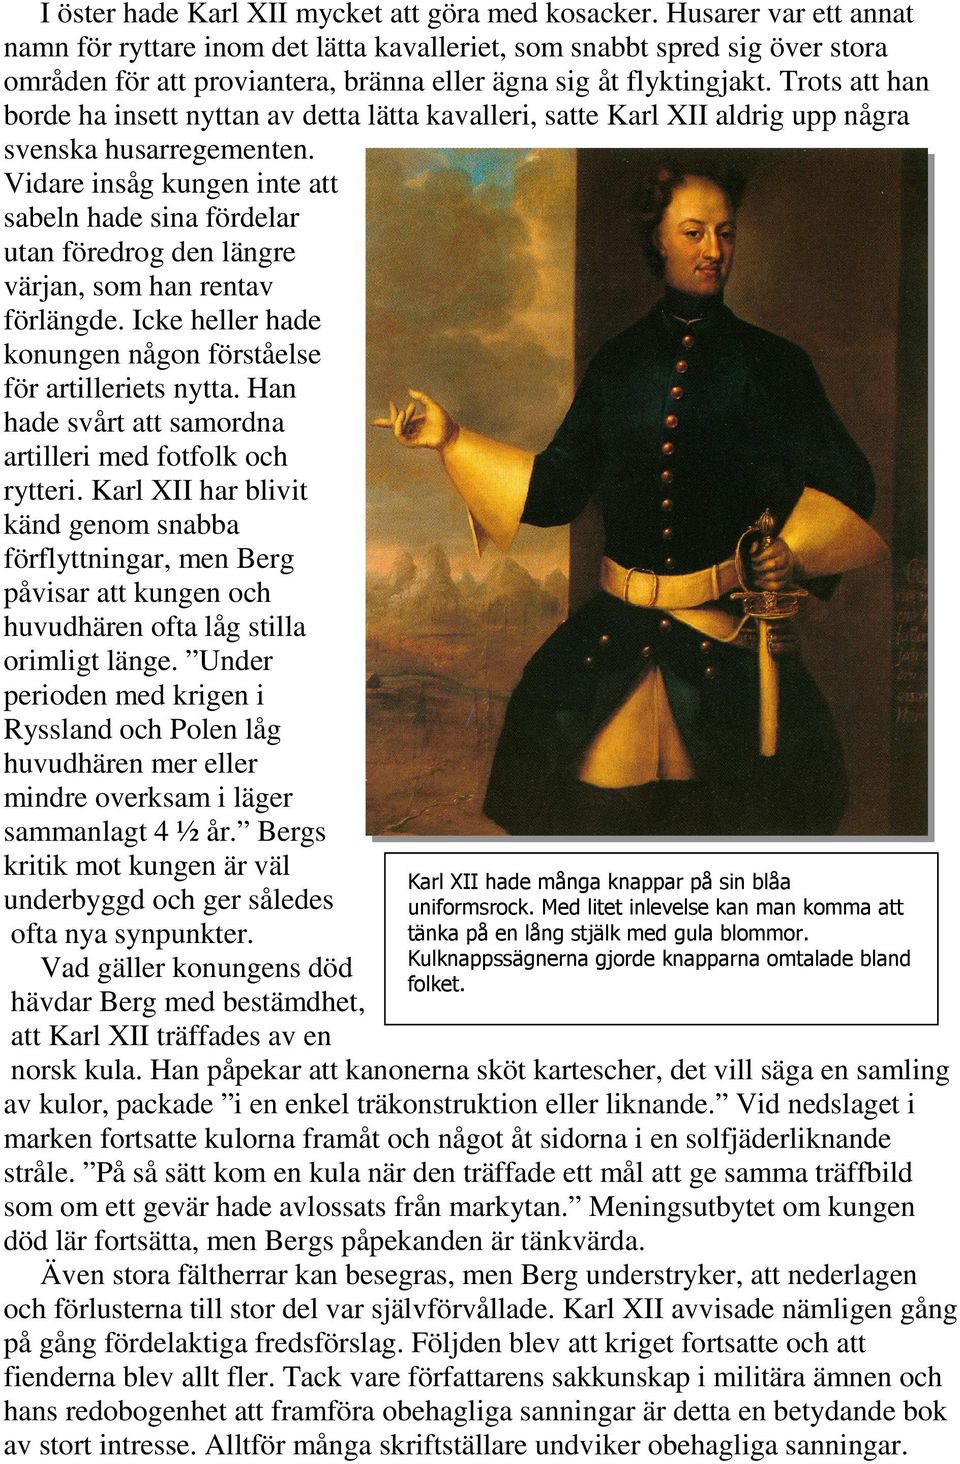 Trots att han borde ha insett nyttan av detta lätta kavalleri, satte Karl XII aldrig upp några svenska husarregementen.